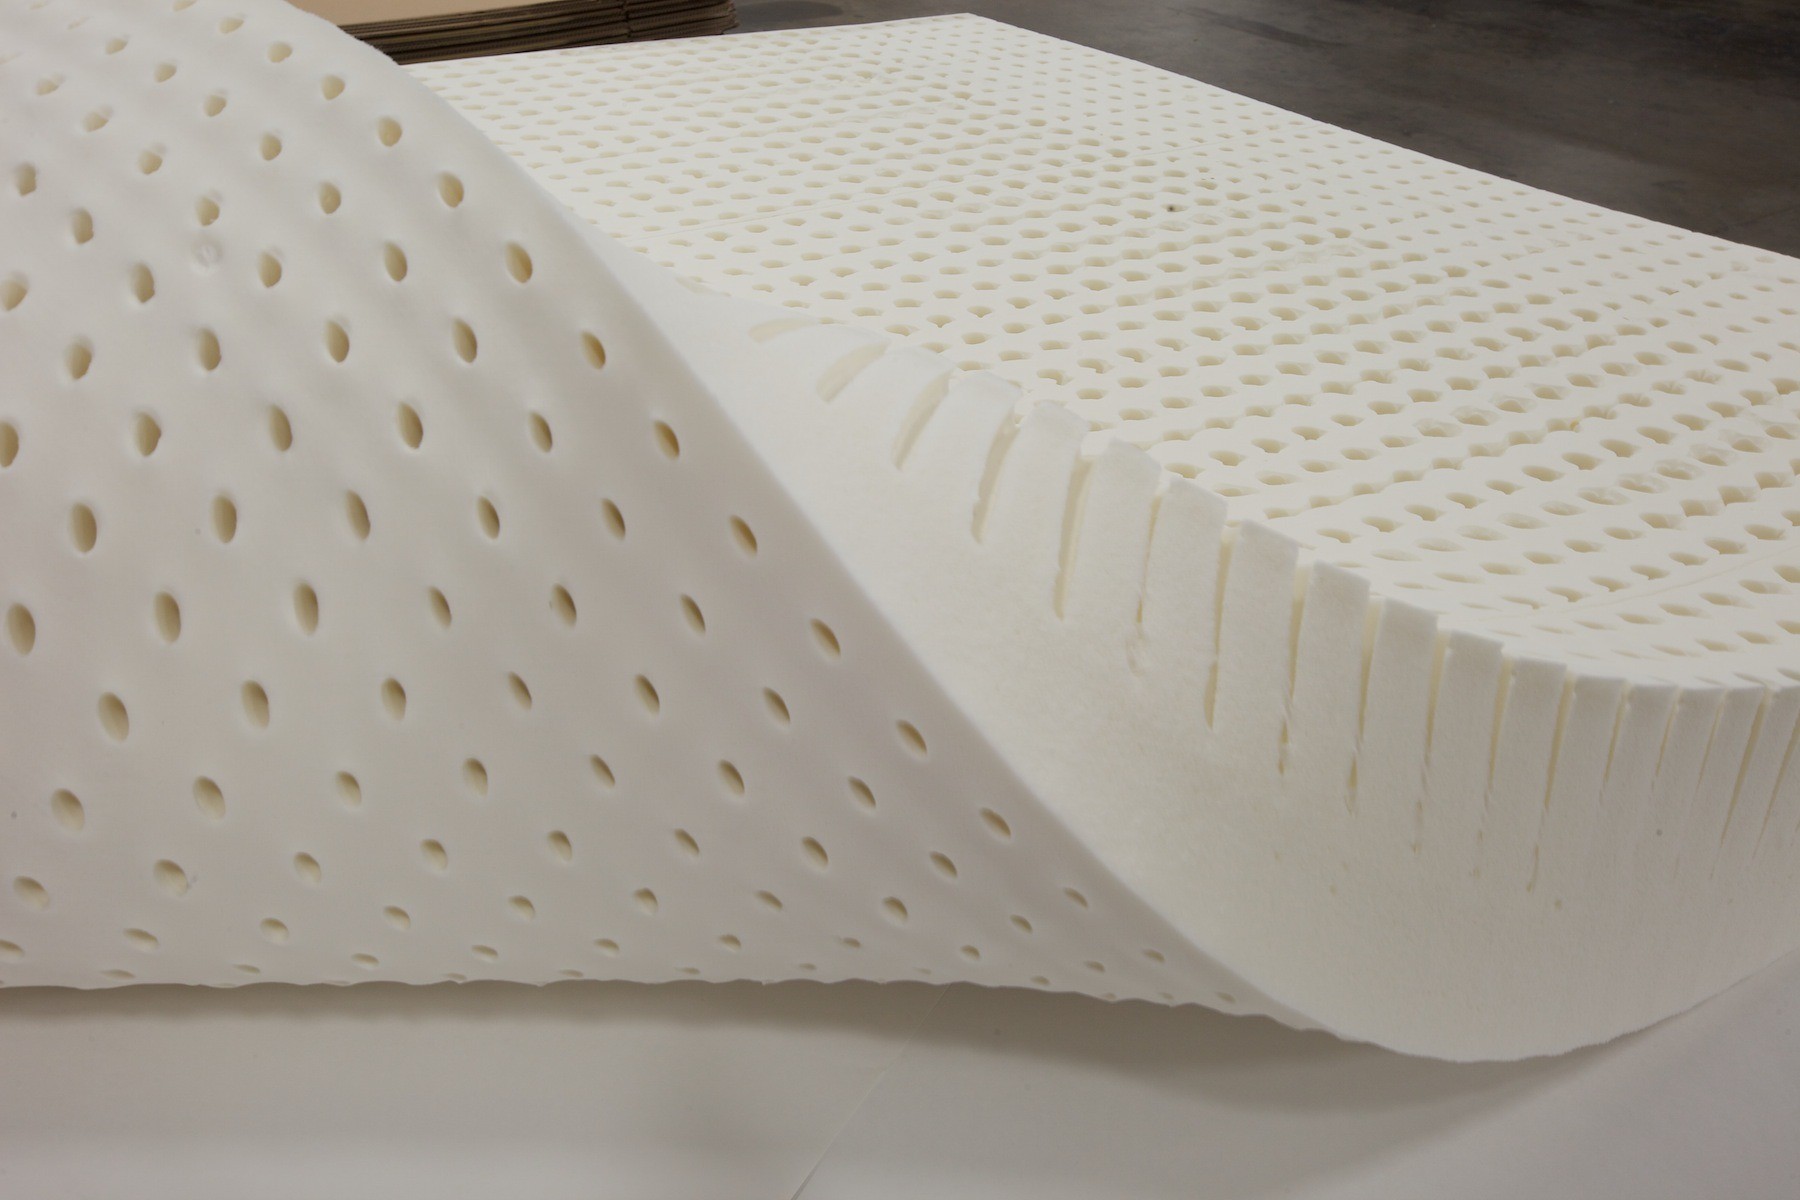 latex foam vs coil mattress